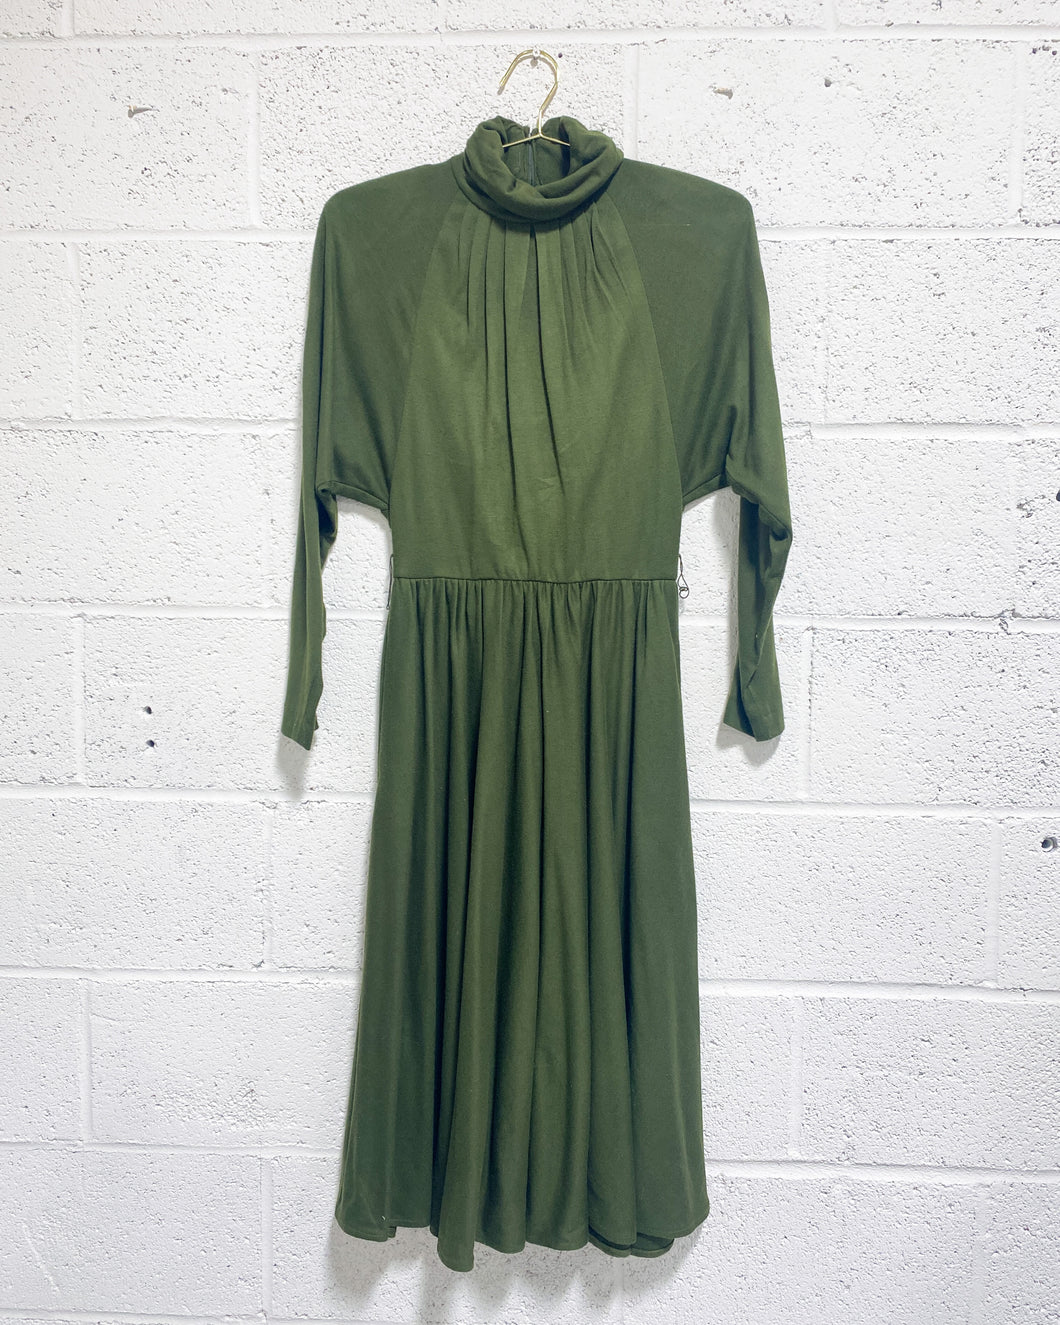 Vintage Olive Green Dress